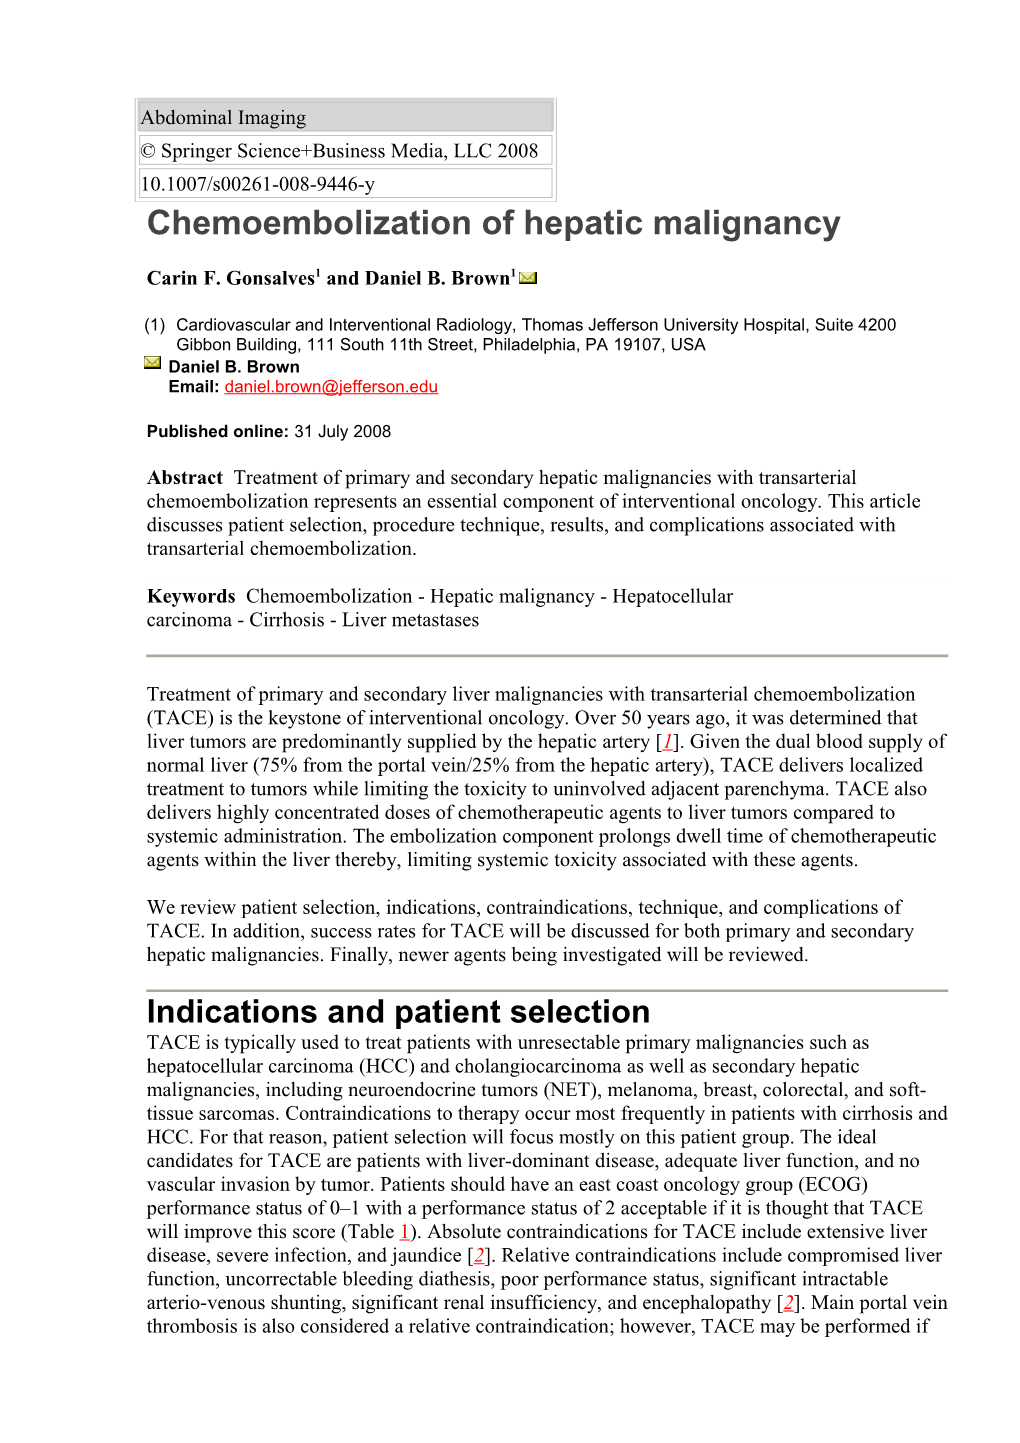 Chemoembolization of Hepatic Malignancy